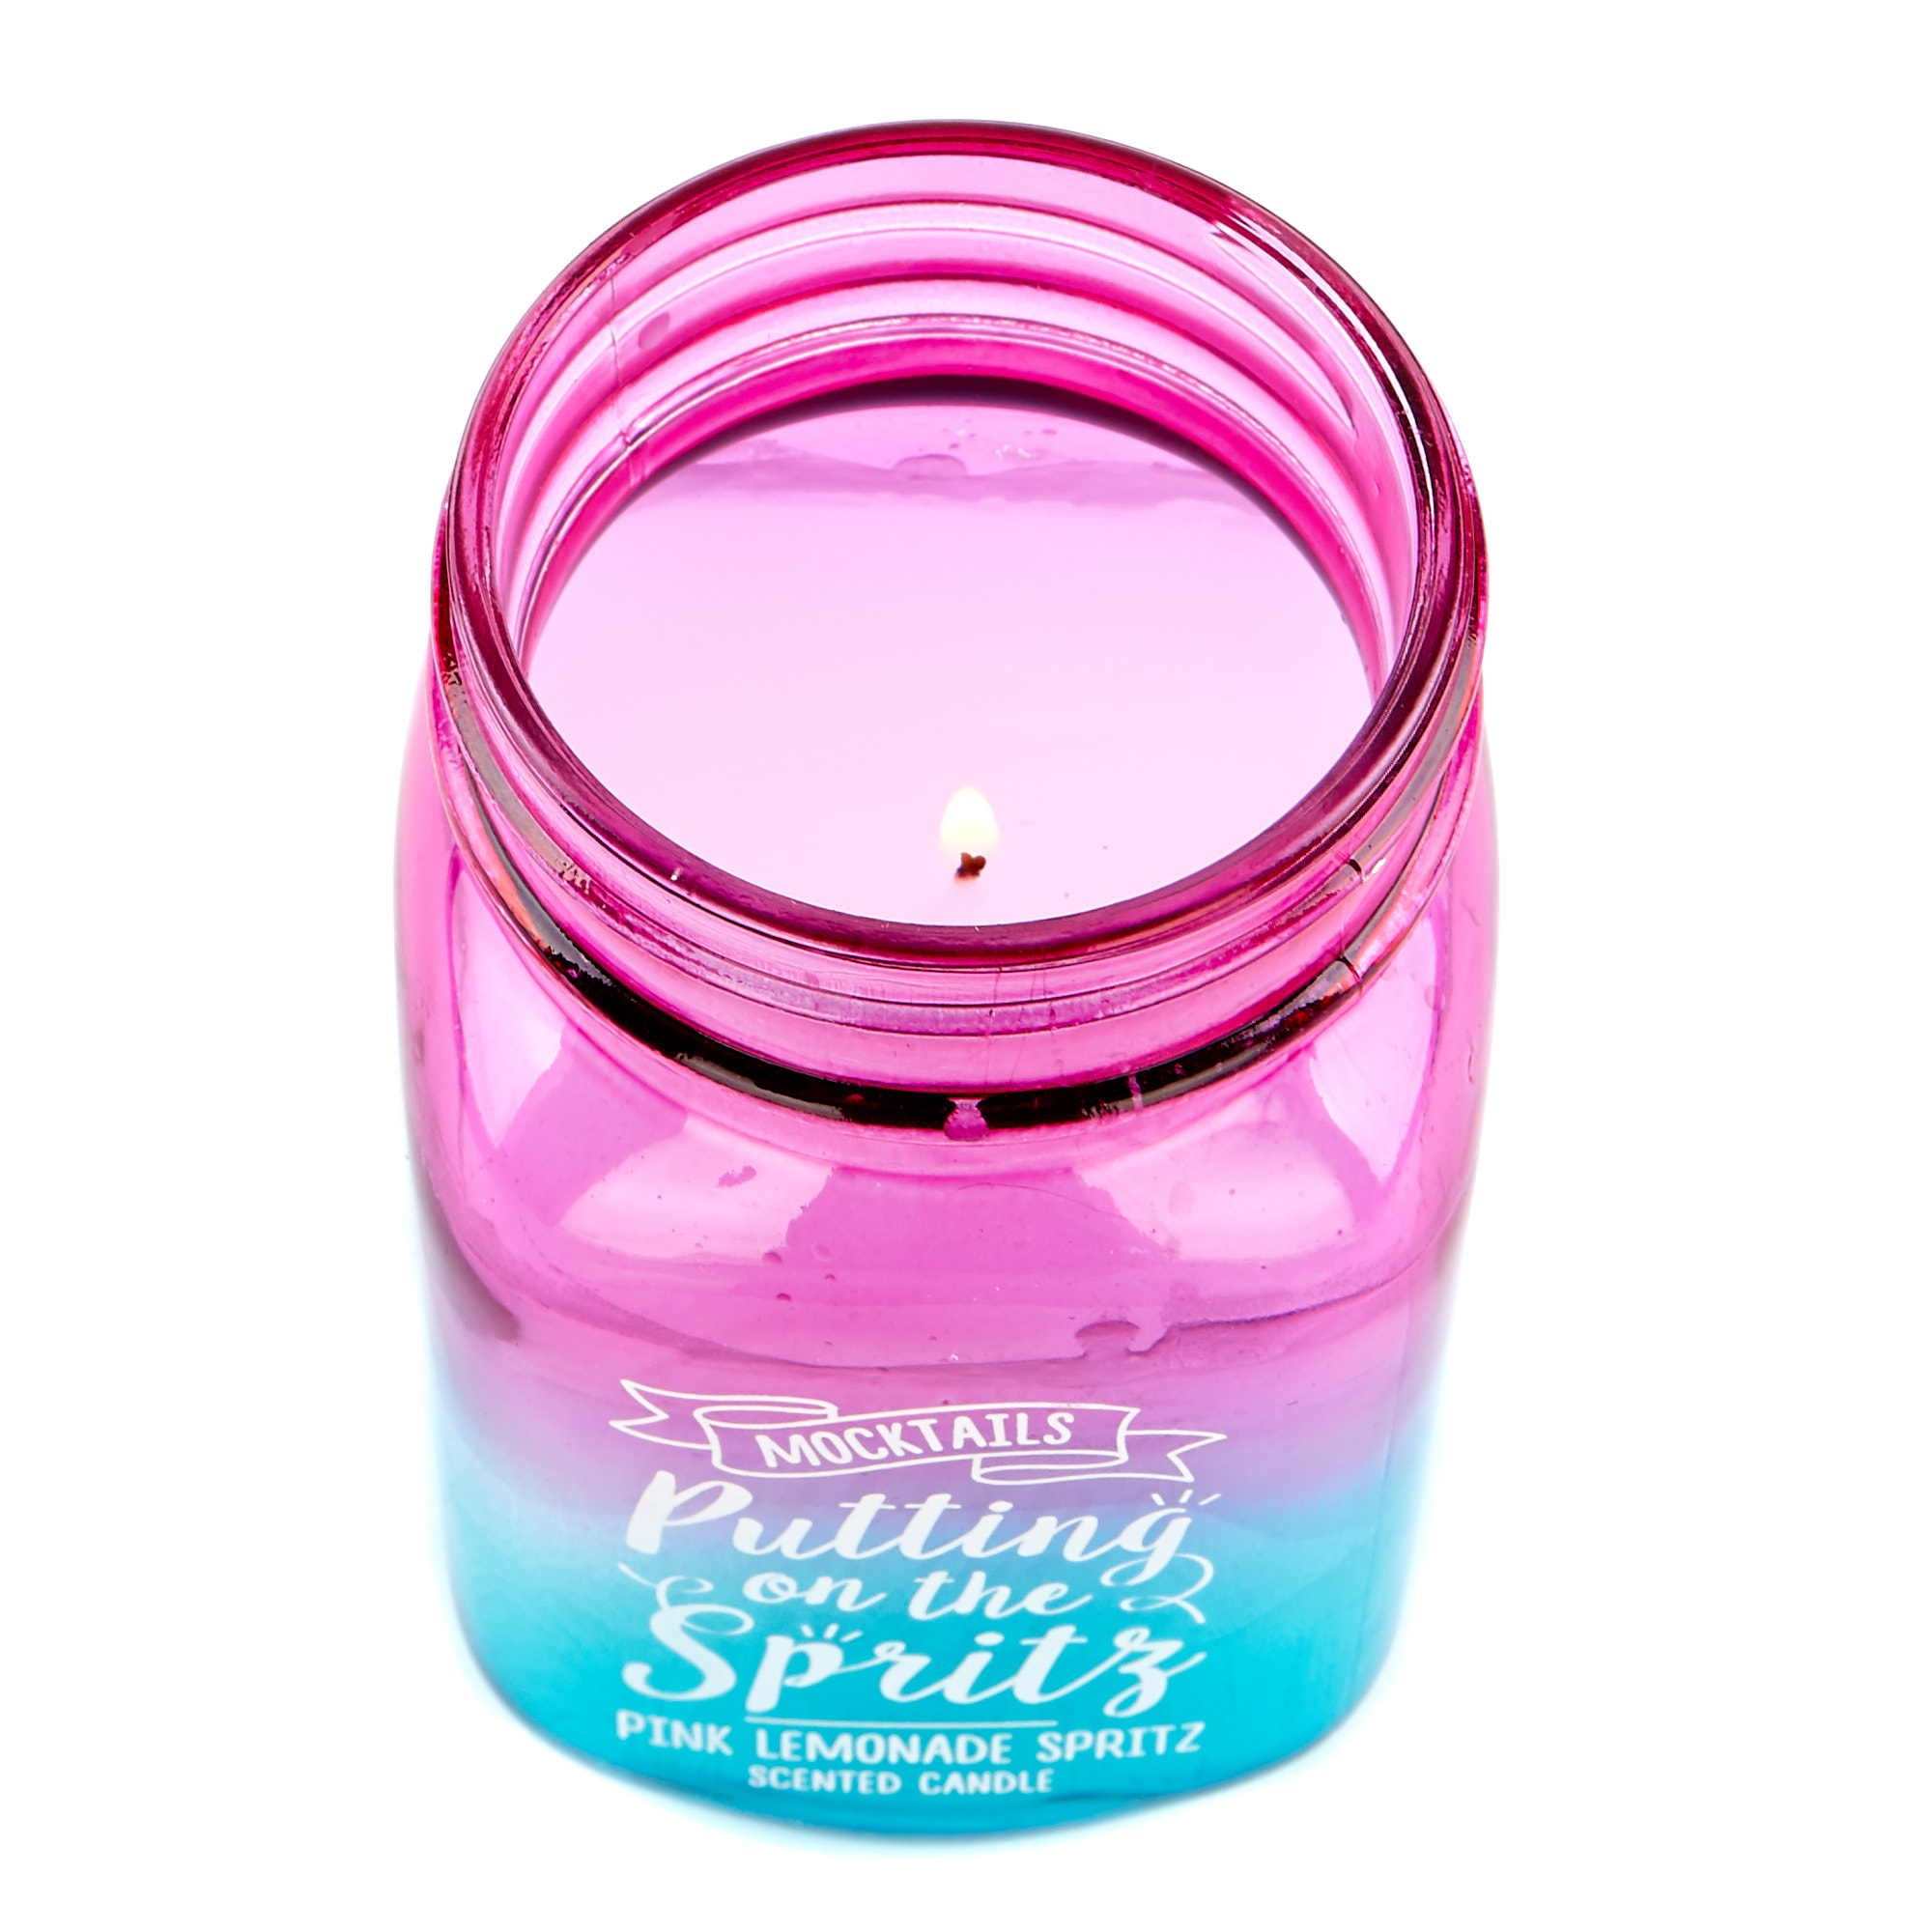 Mocktails Pink Lemonade Spritz Scented Candle